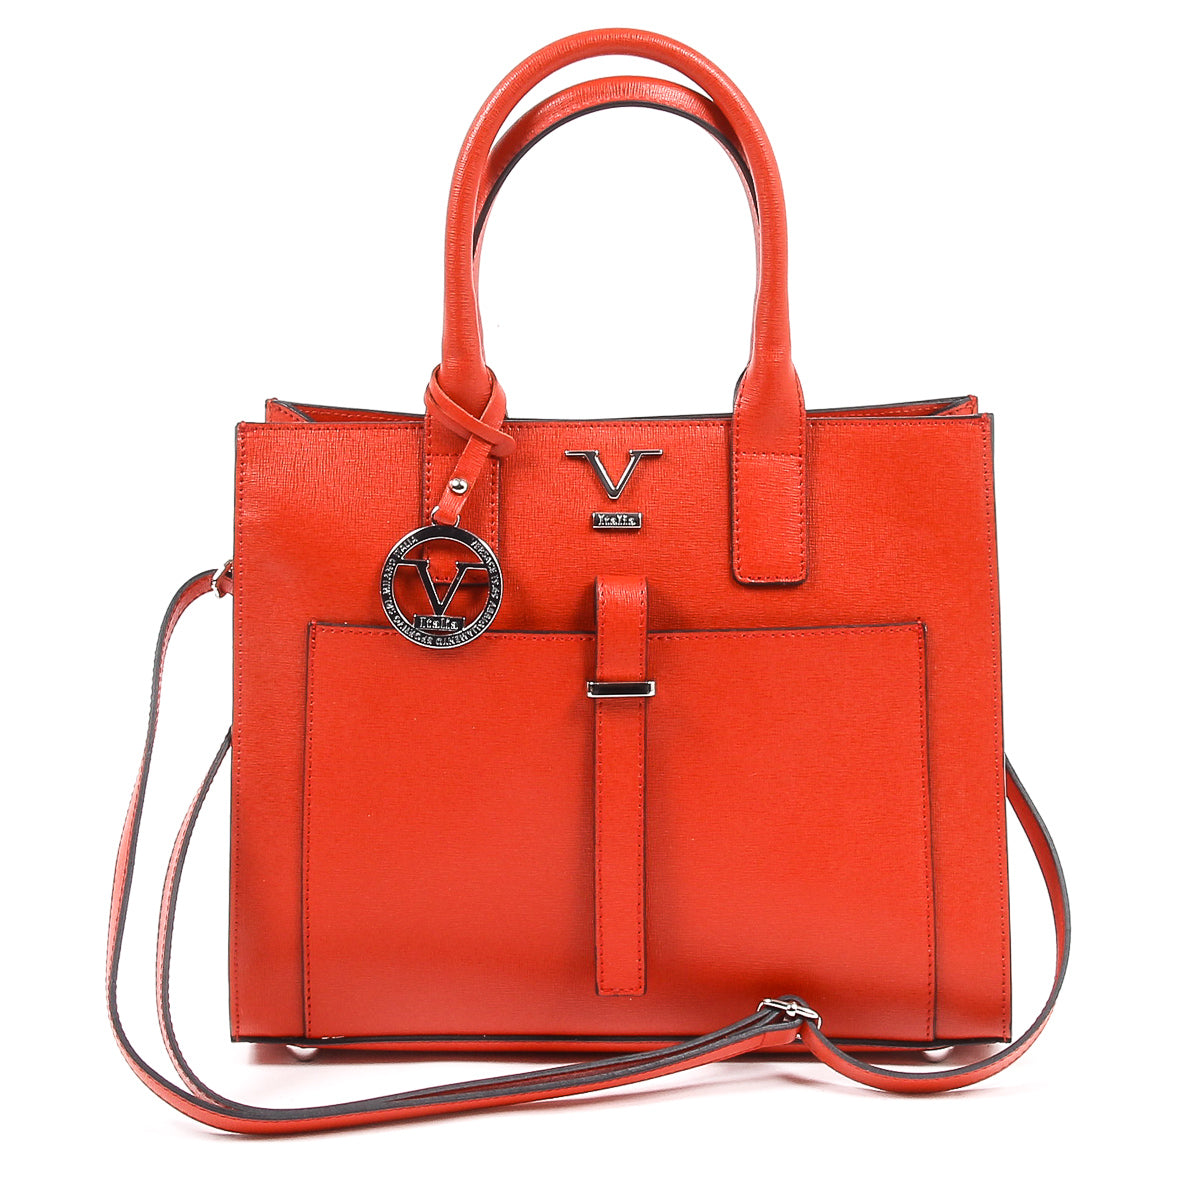 V 1969 Italia Womens Handbag V006 SAFFIANO RED